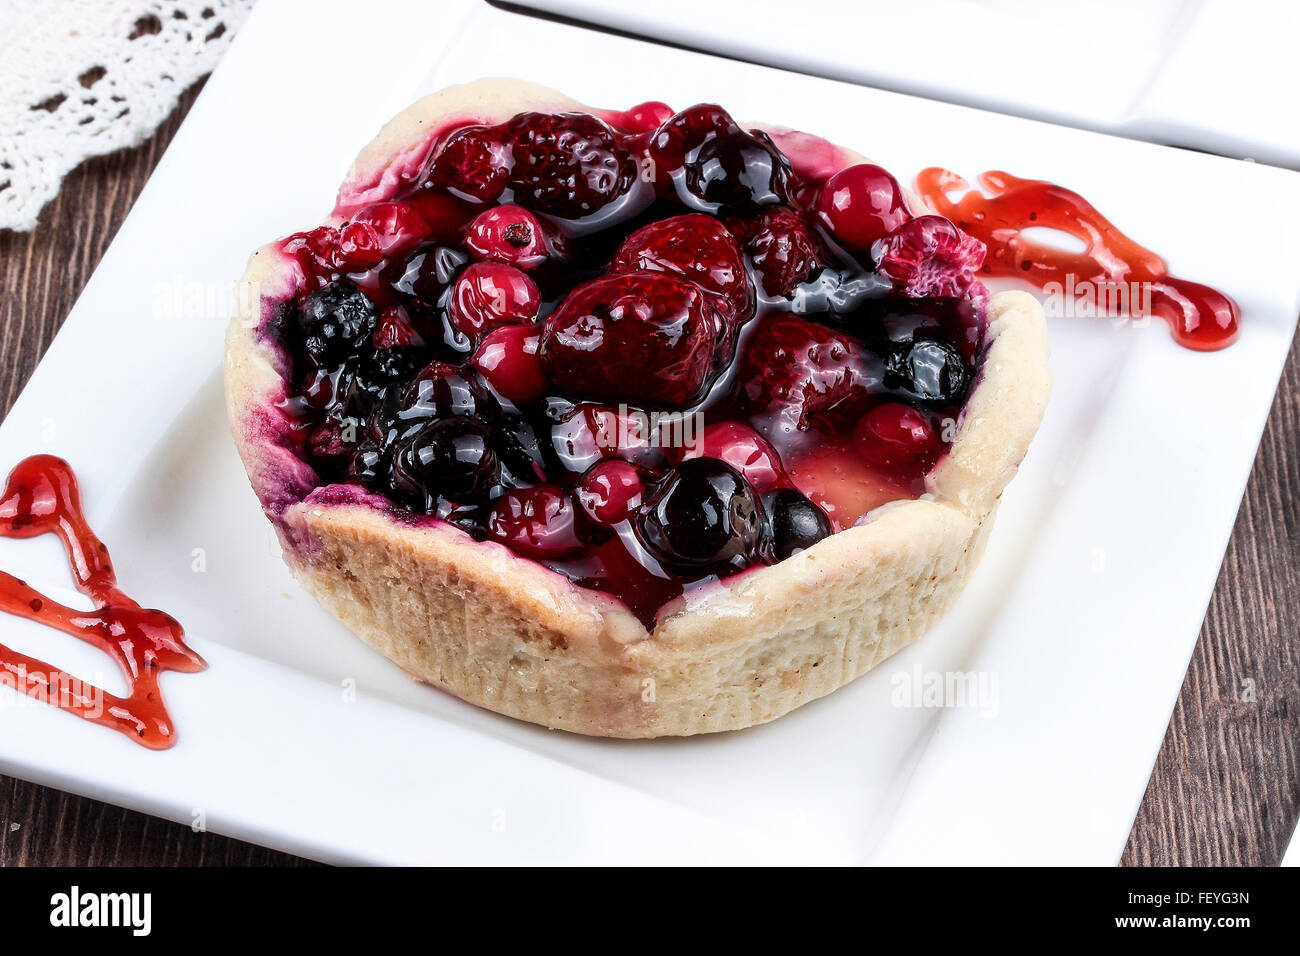 Blueberry pie with raspberries Stock Photo